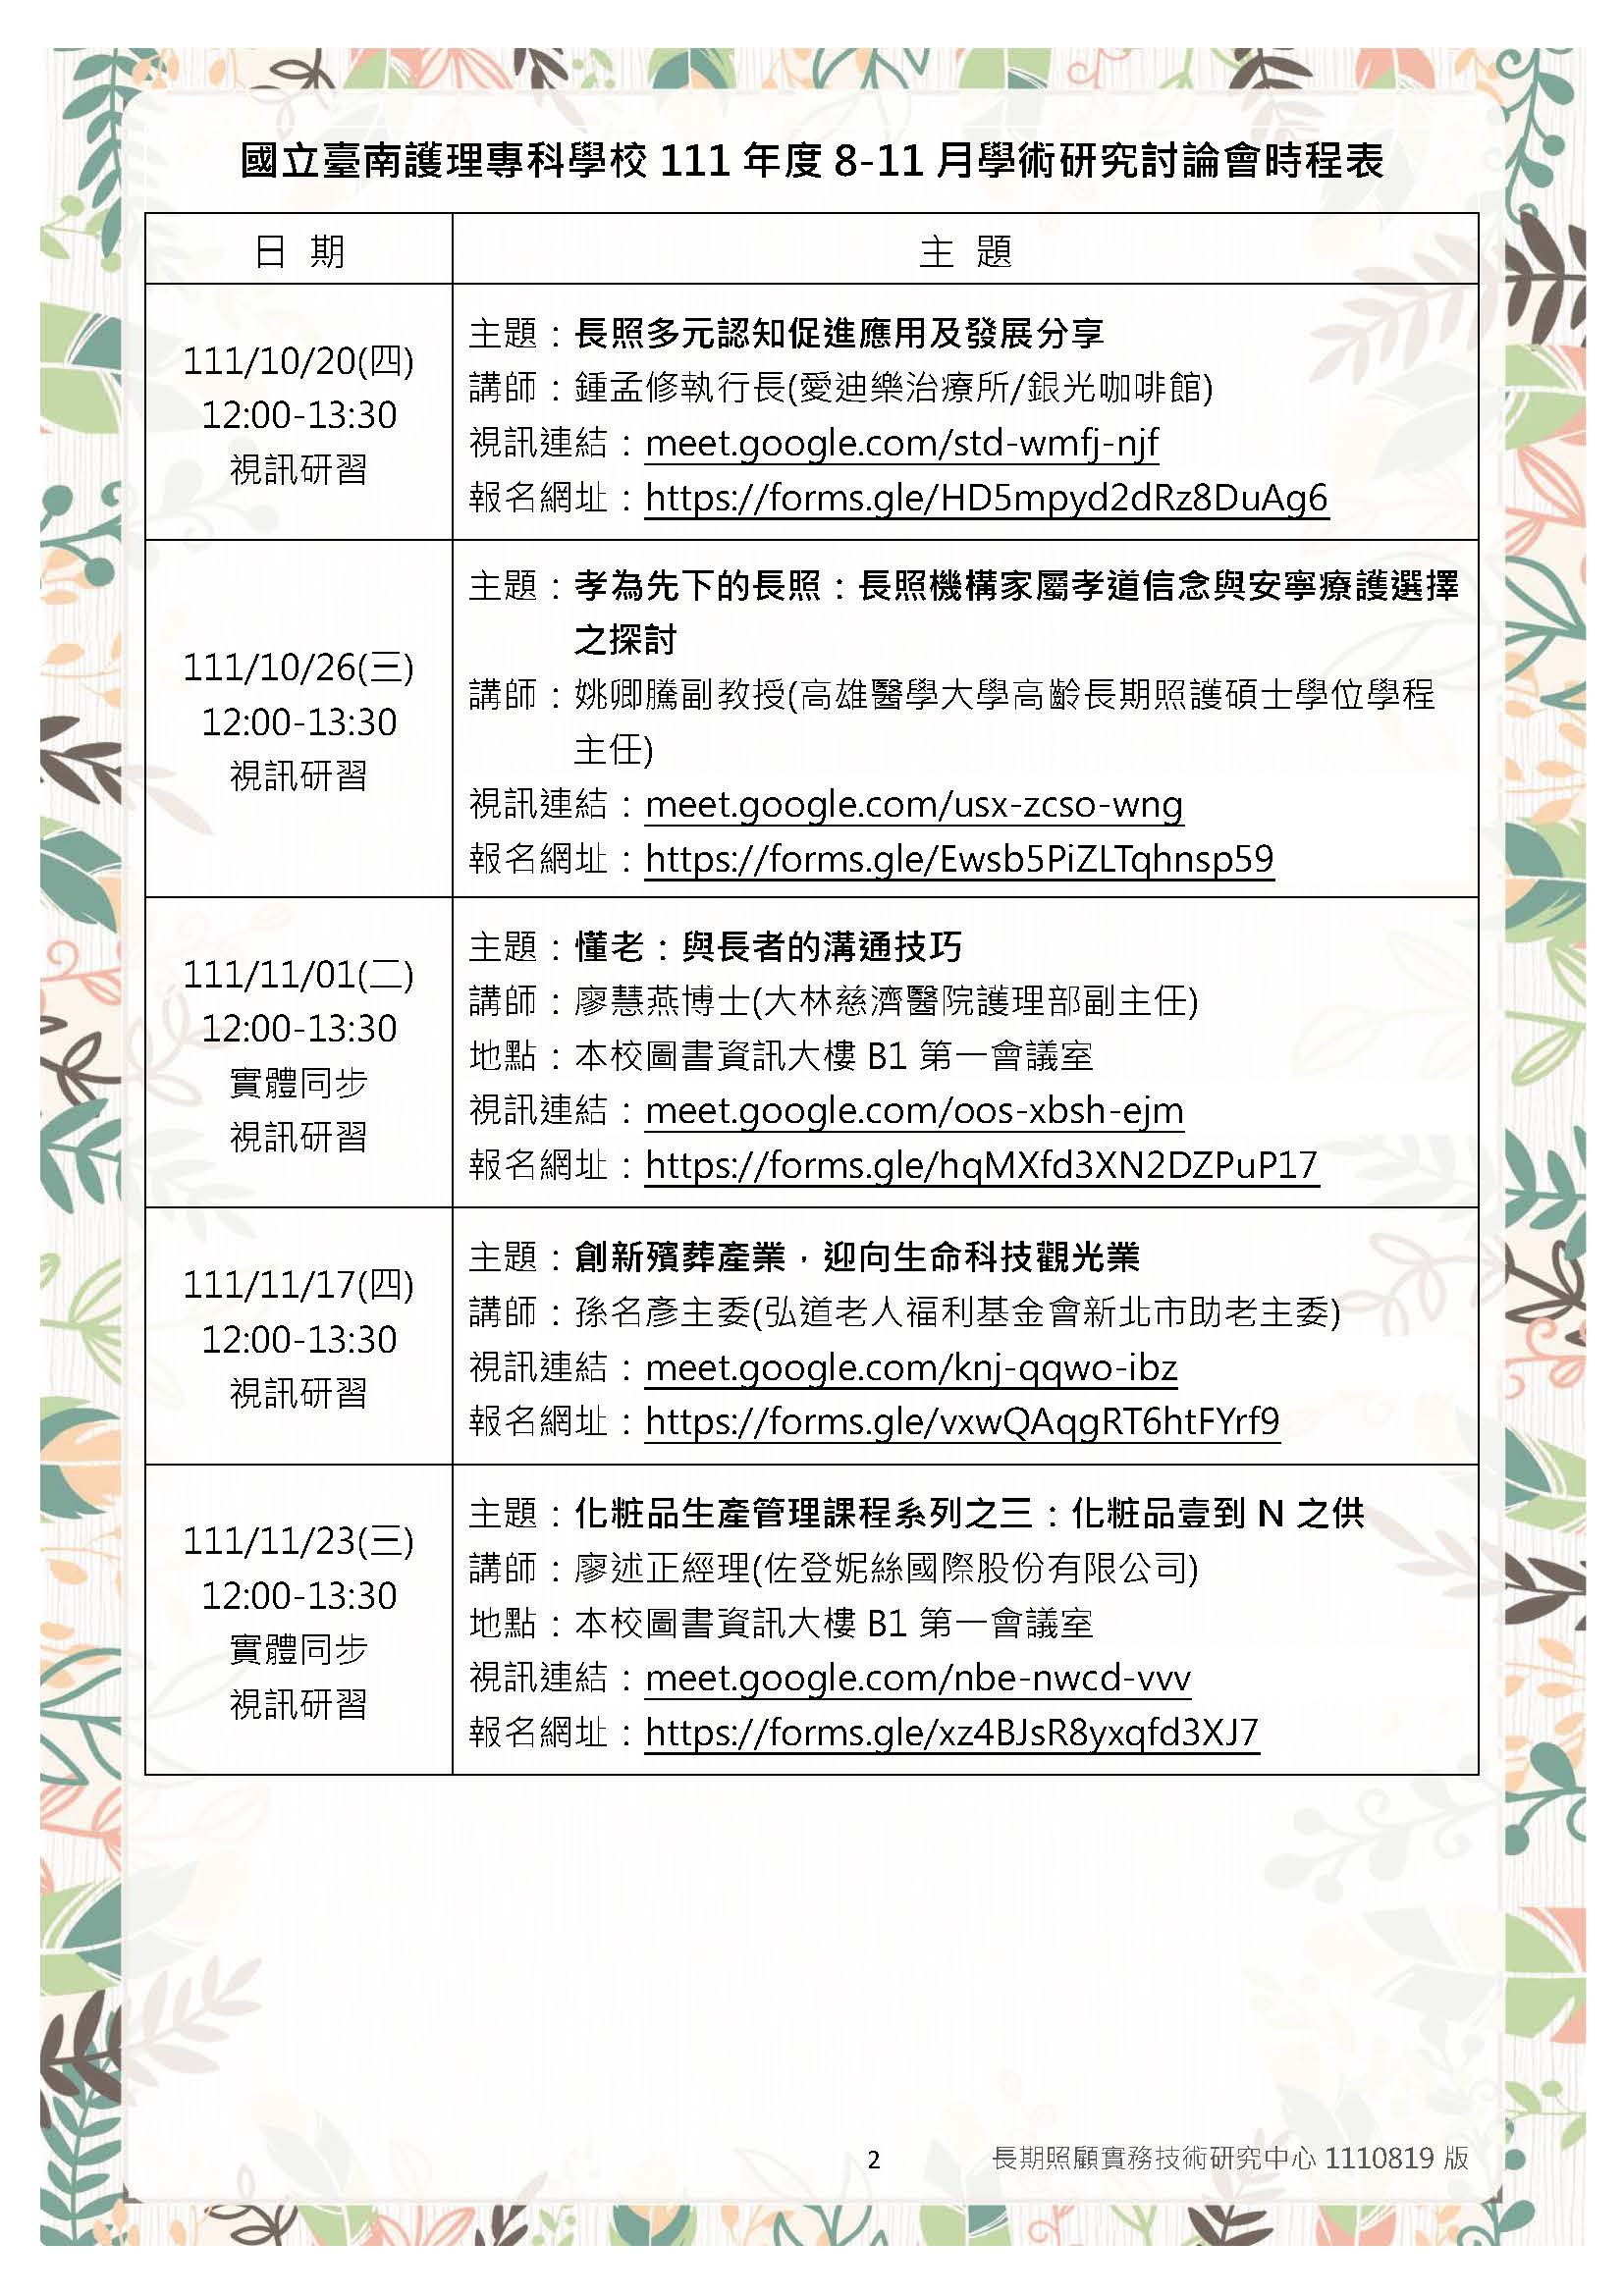 國立臺南護理專科學校 111年度8 11月學術研究討論會時程 學術研究討論會時程表 頁面 2